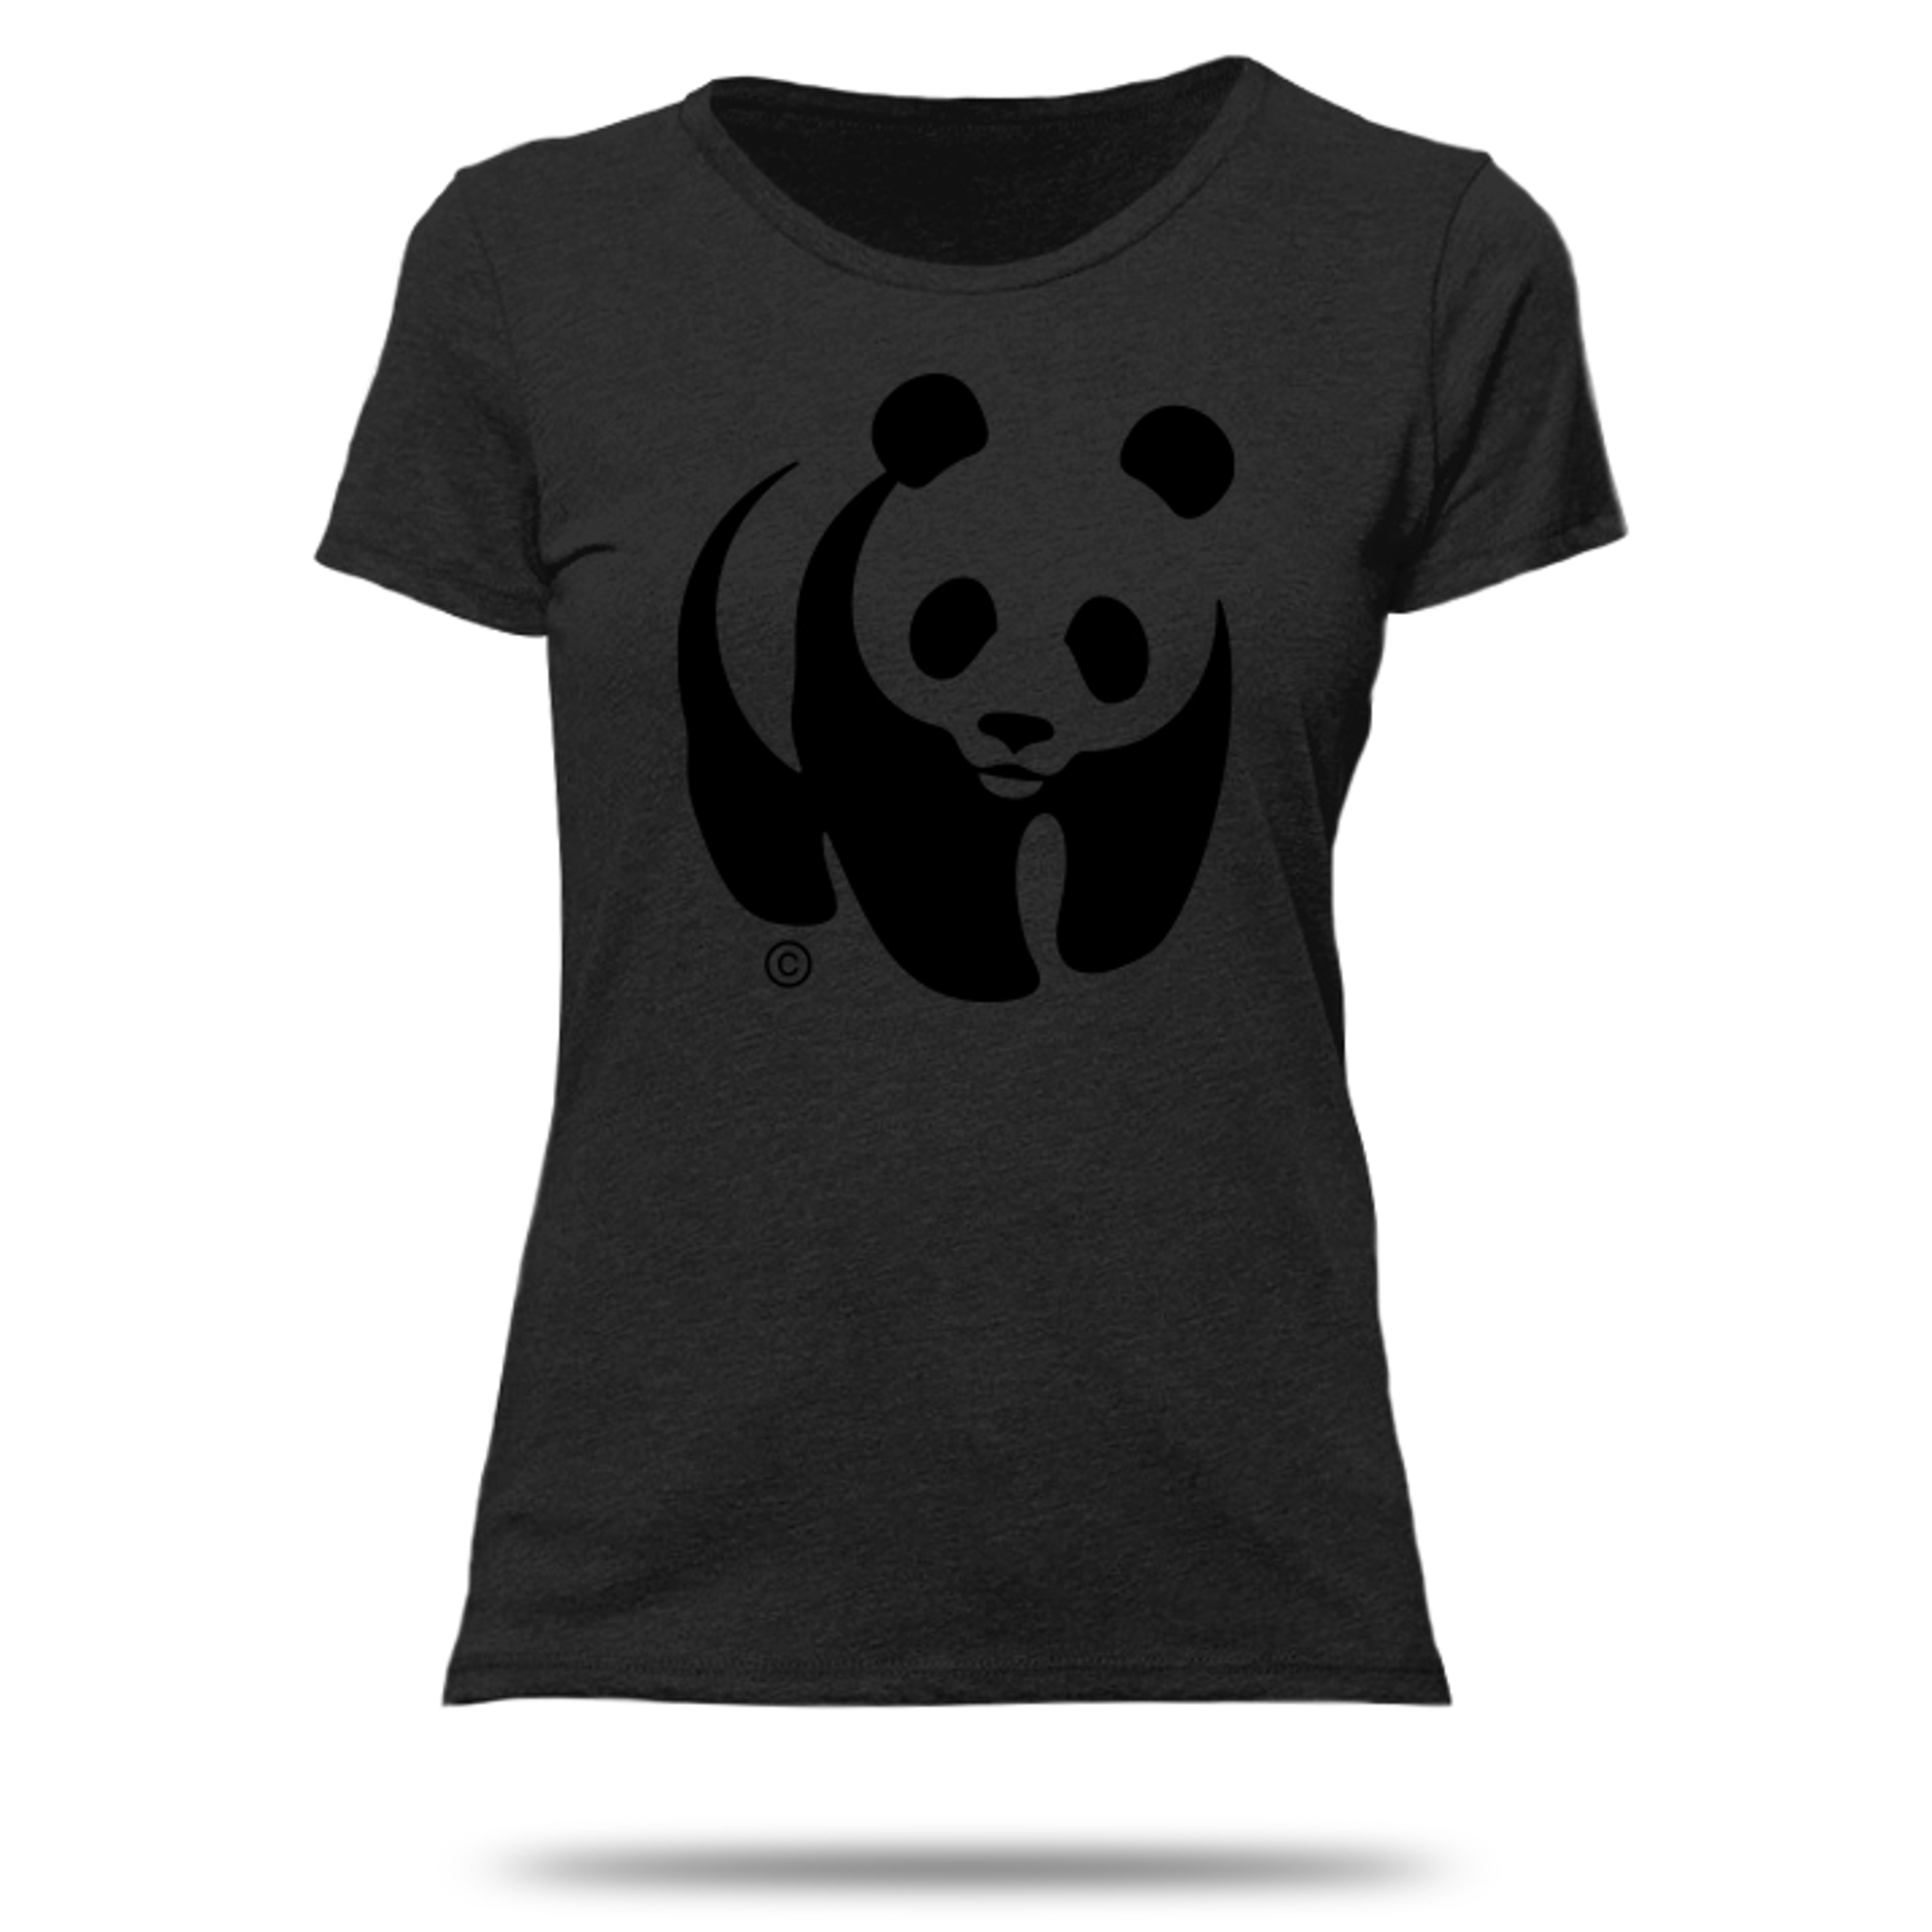 Women's black panda t-shirt - WWF-Canada